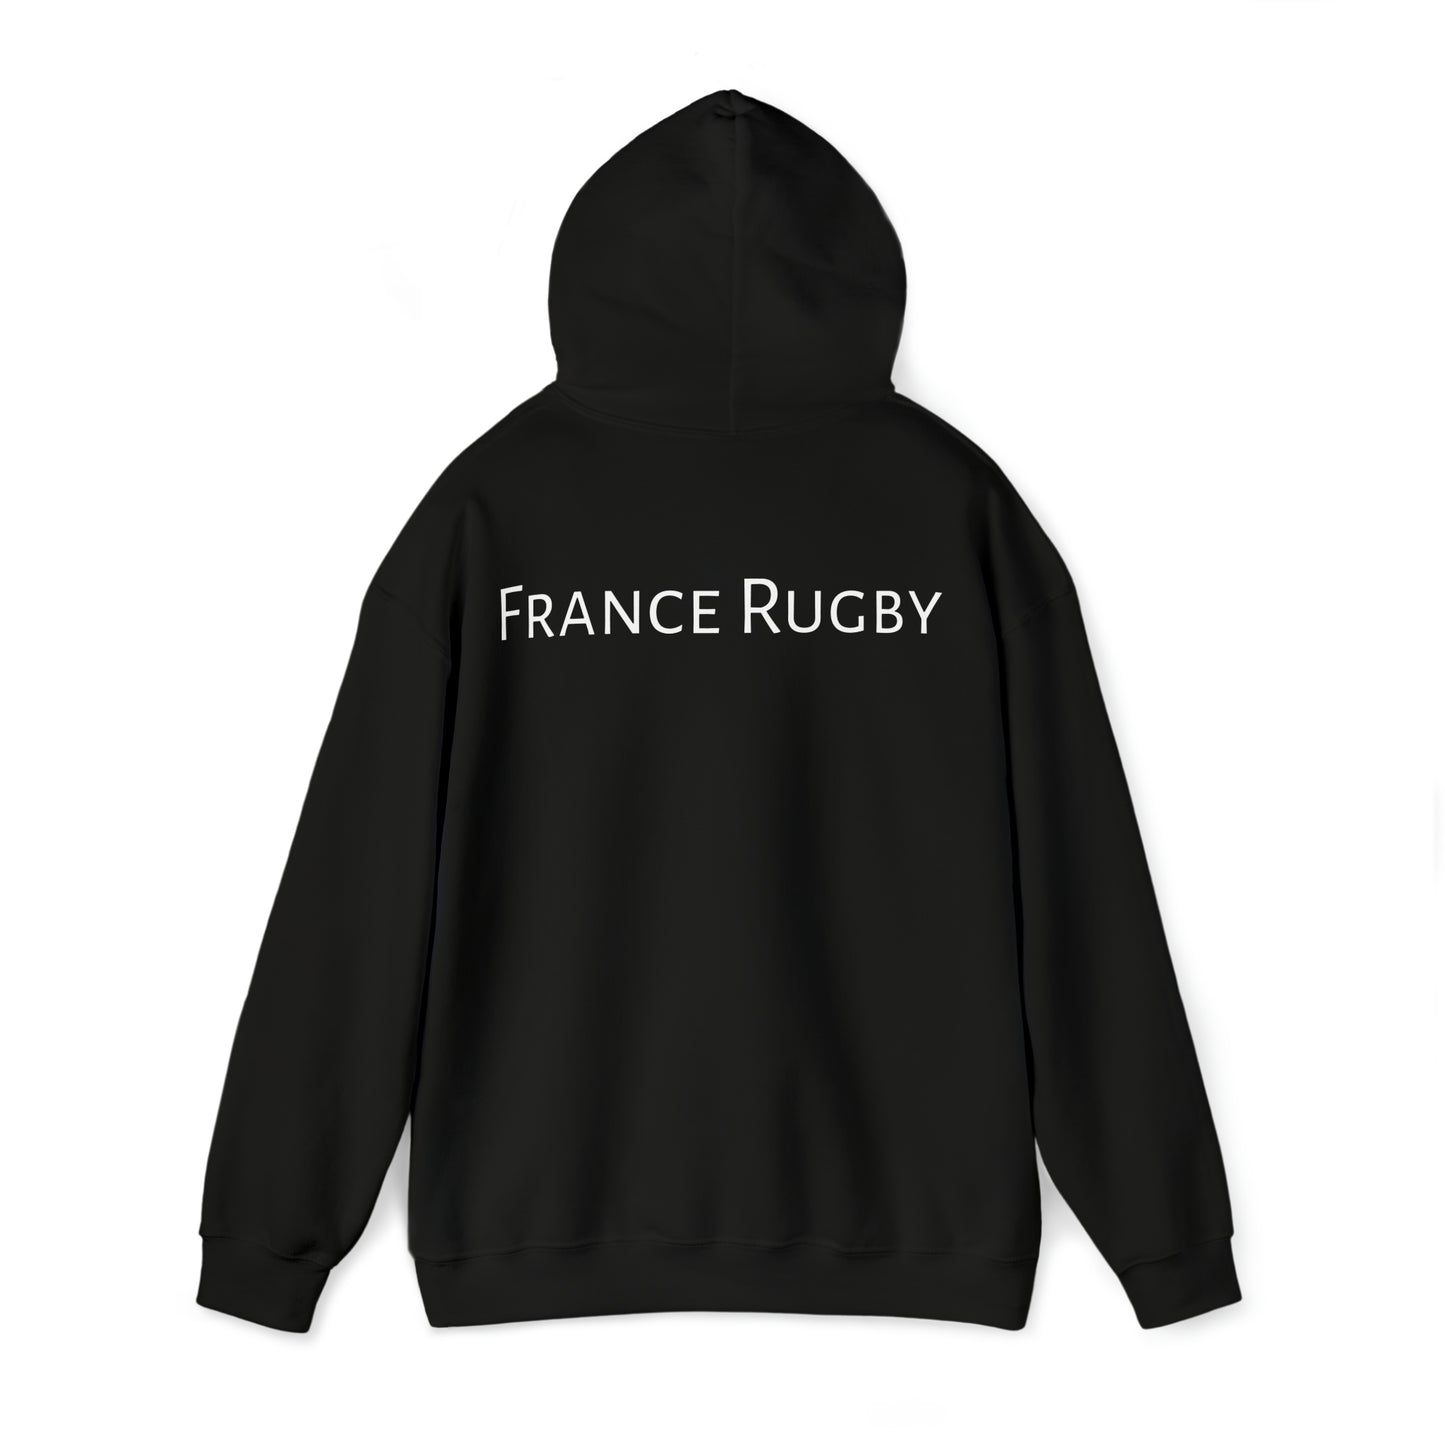 France Winning RWC 2023 - dark hoodies